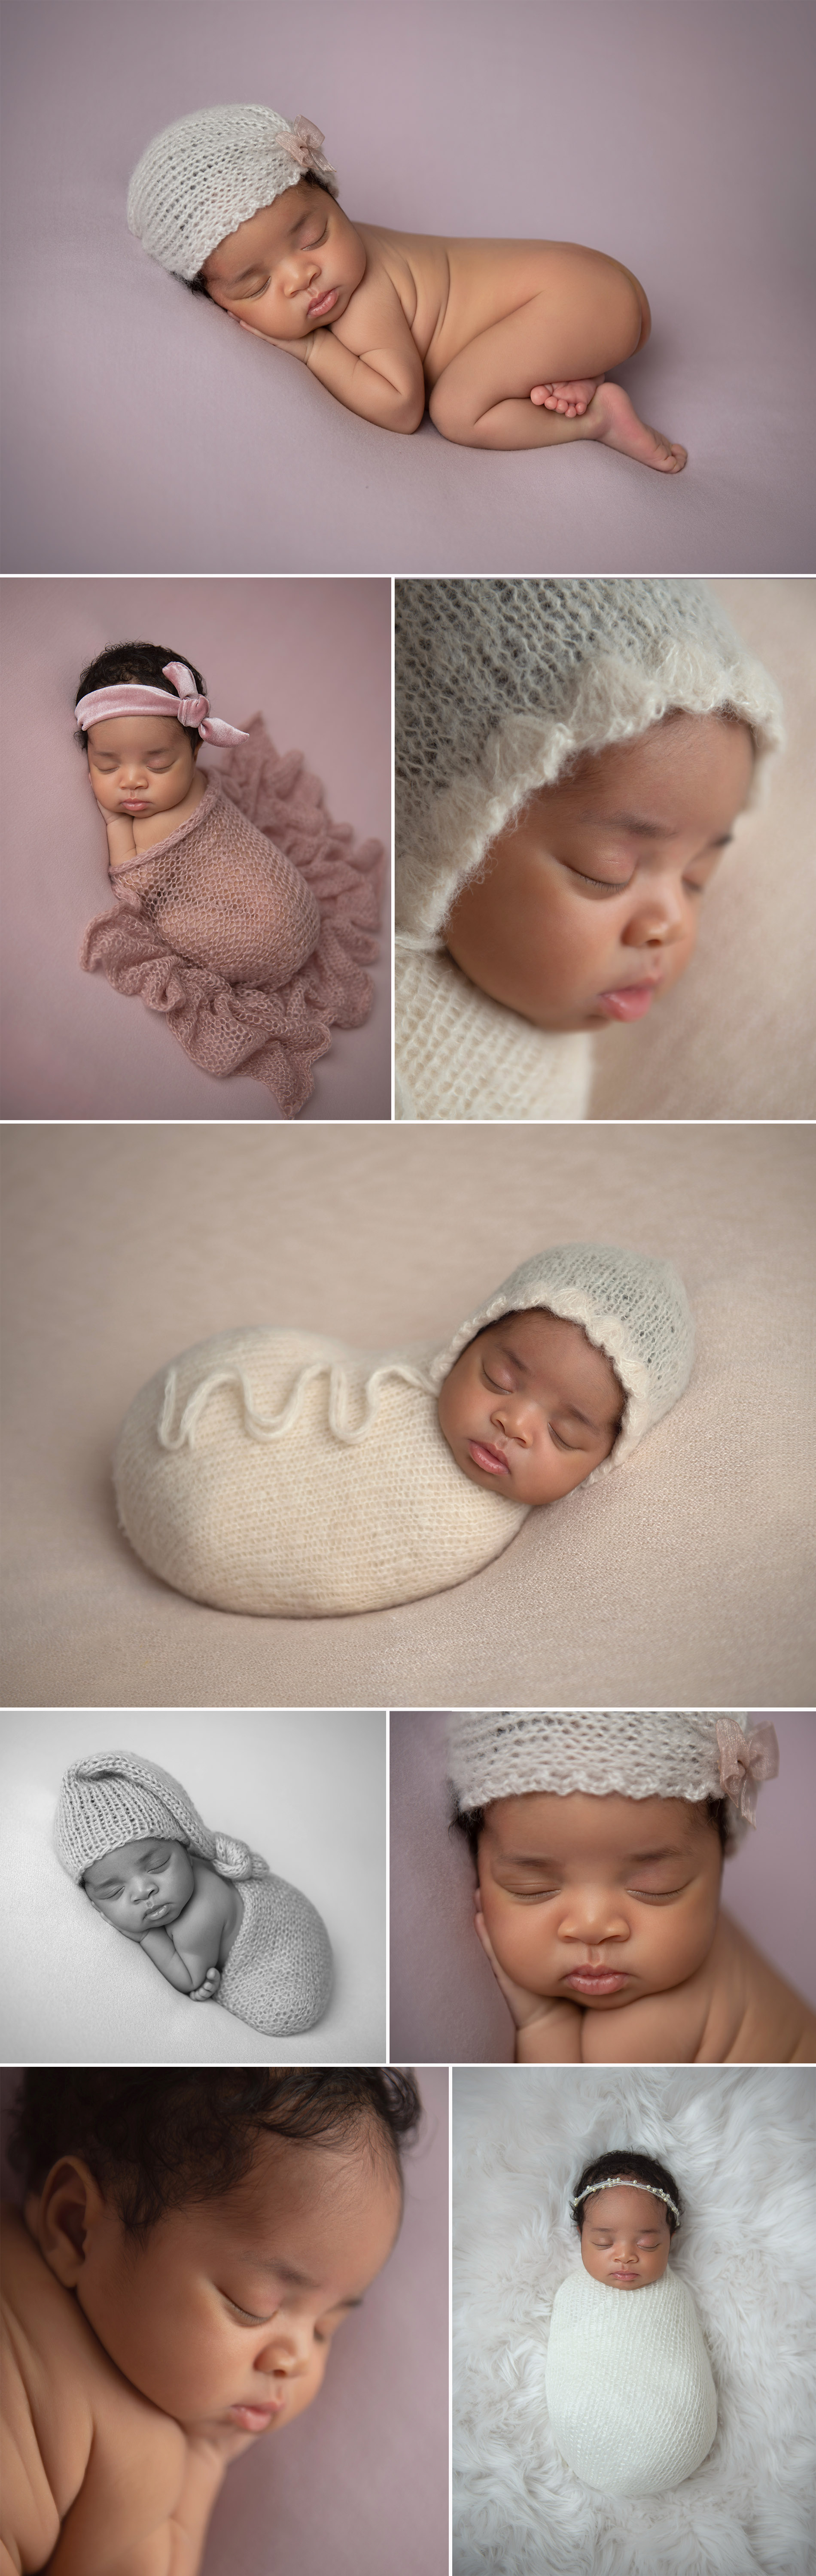 manhattan newborn photoshoot studio